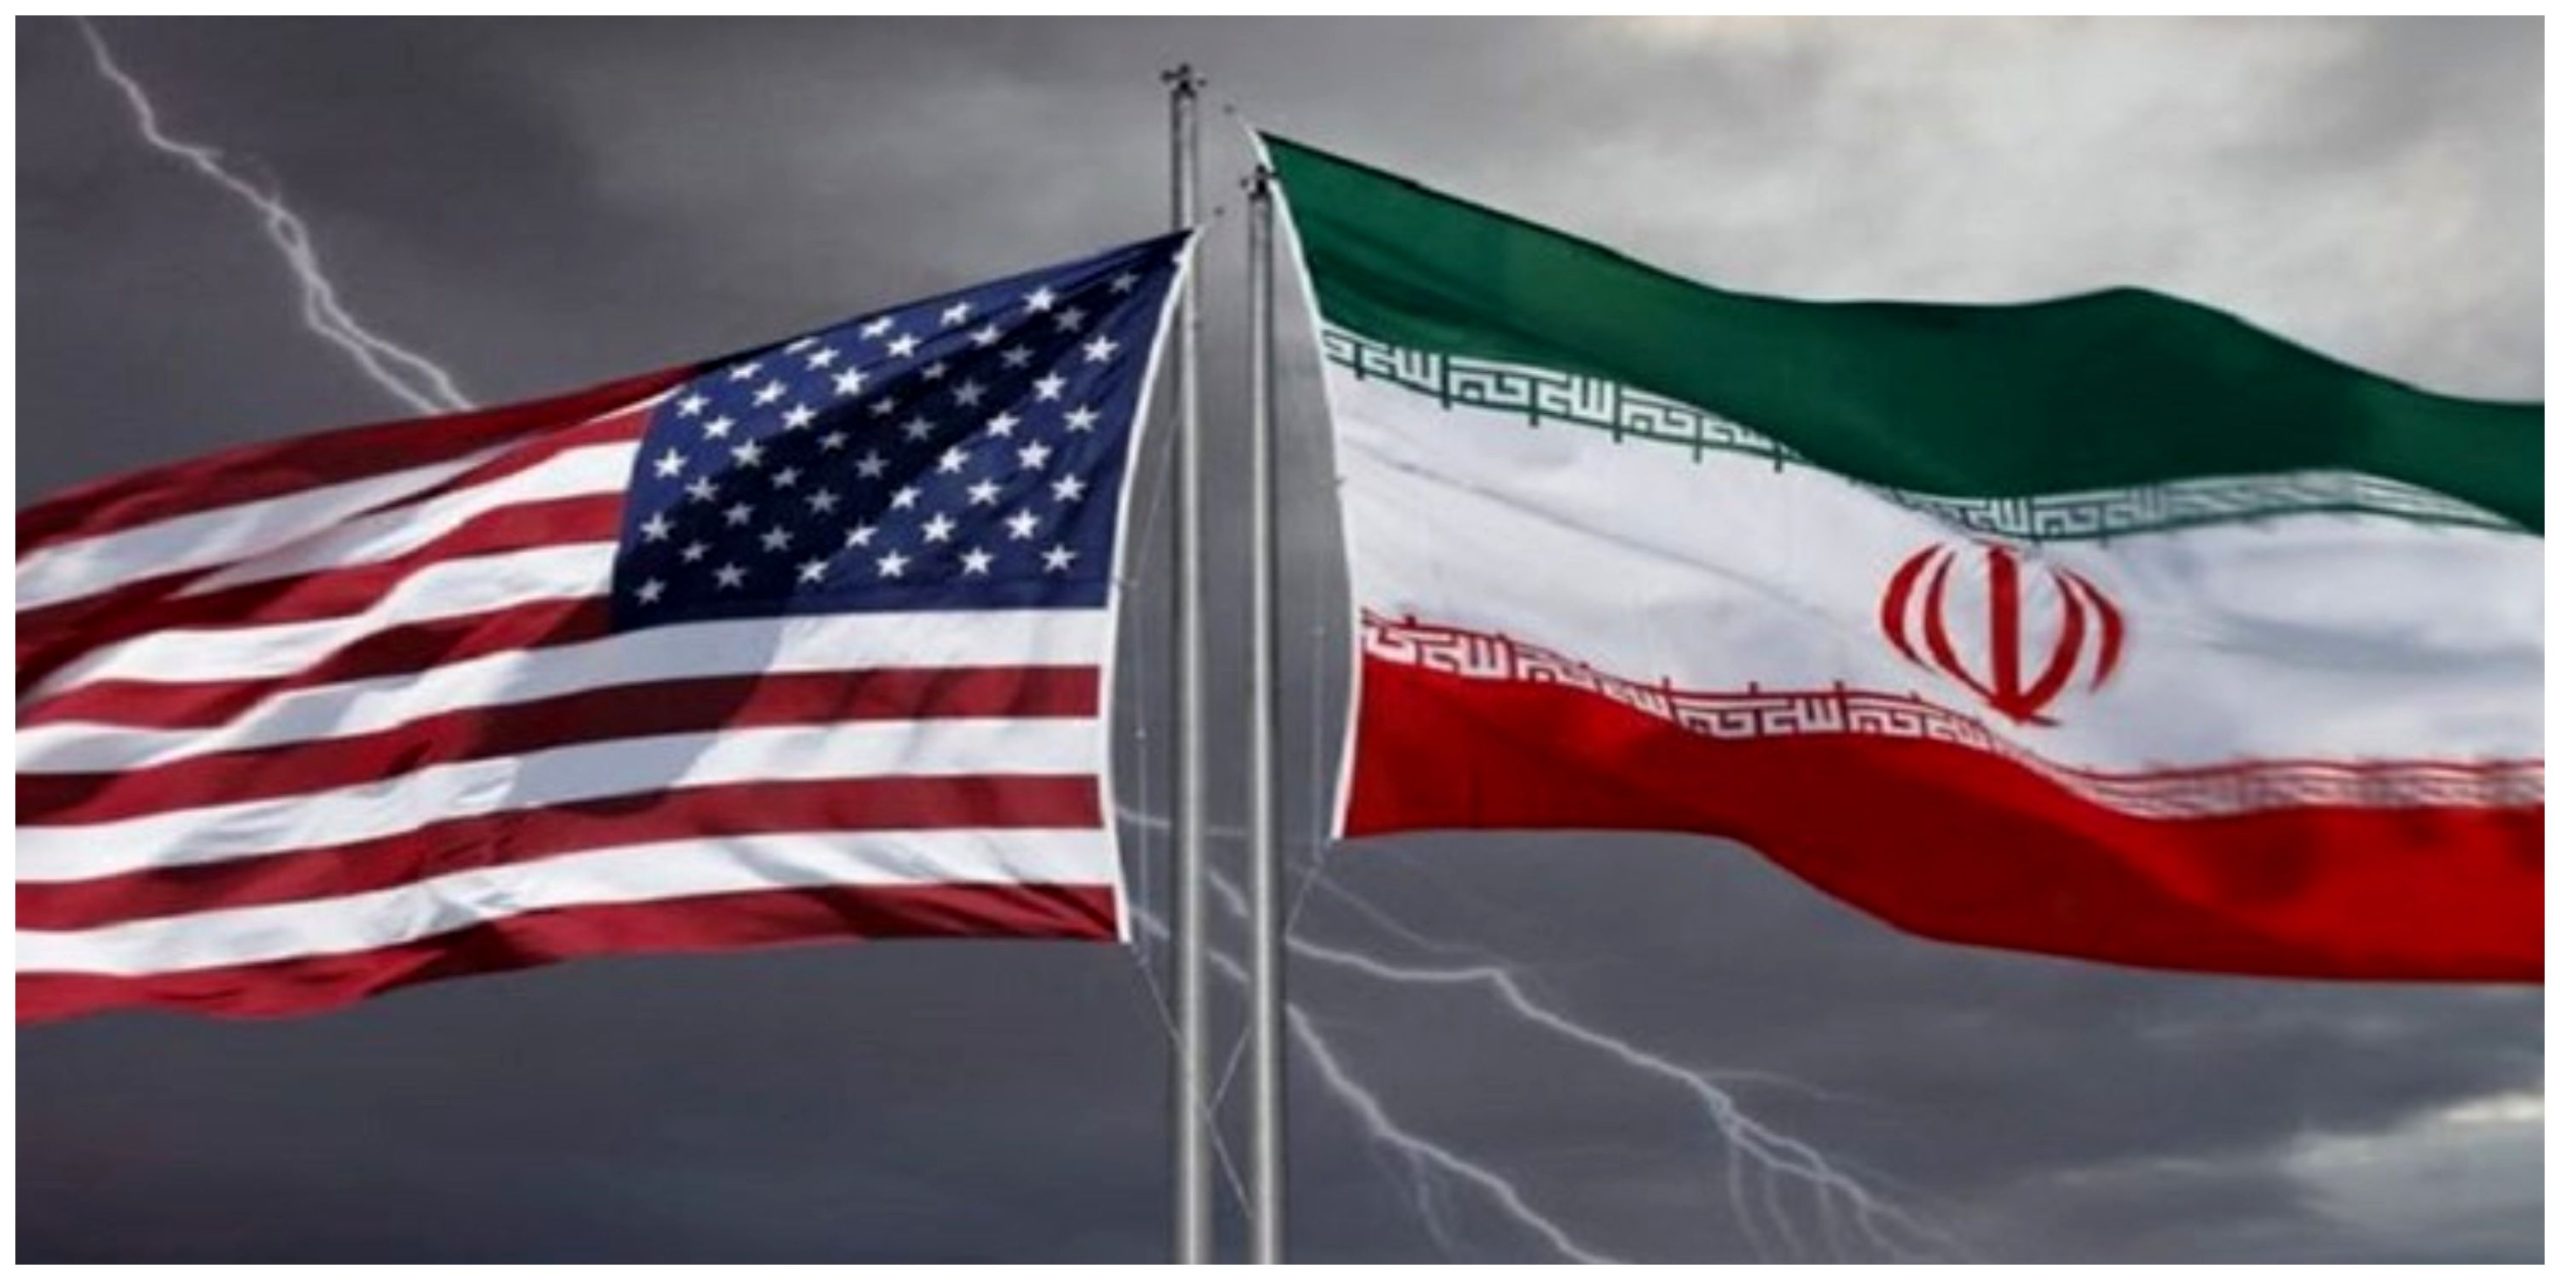 مفاد توافق پنهان ایران و آمریکا چیست؟/ چه امتیازاتی از آمریکا گرفته شد و چه امتیازاتی داده شد؟